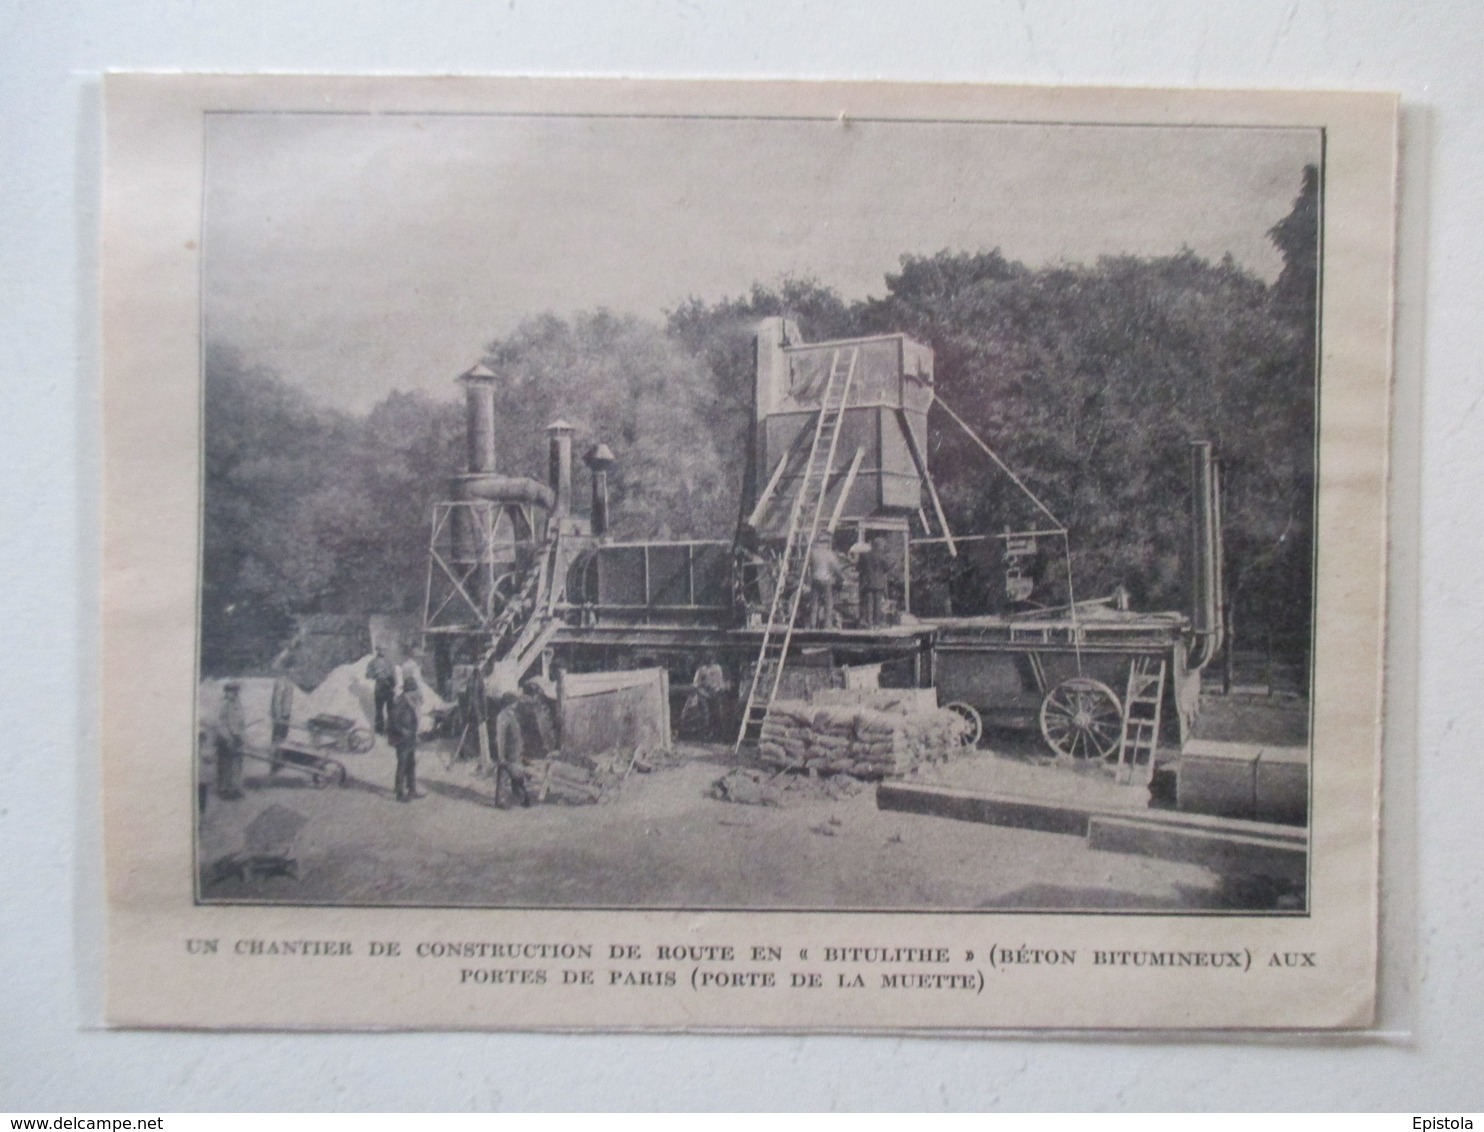 PARIS AUTEUIL   -  Construction De Route   "Machine à Vapeur à Béton Bitumineux"  -  Coupure De Presse De 1928 - Other Apparatus